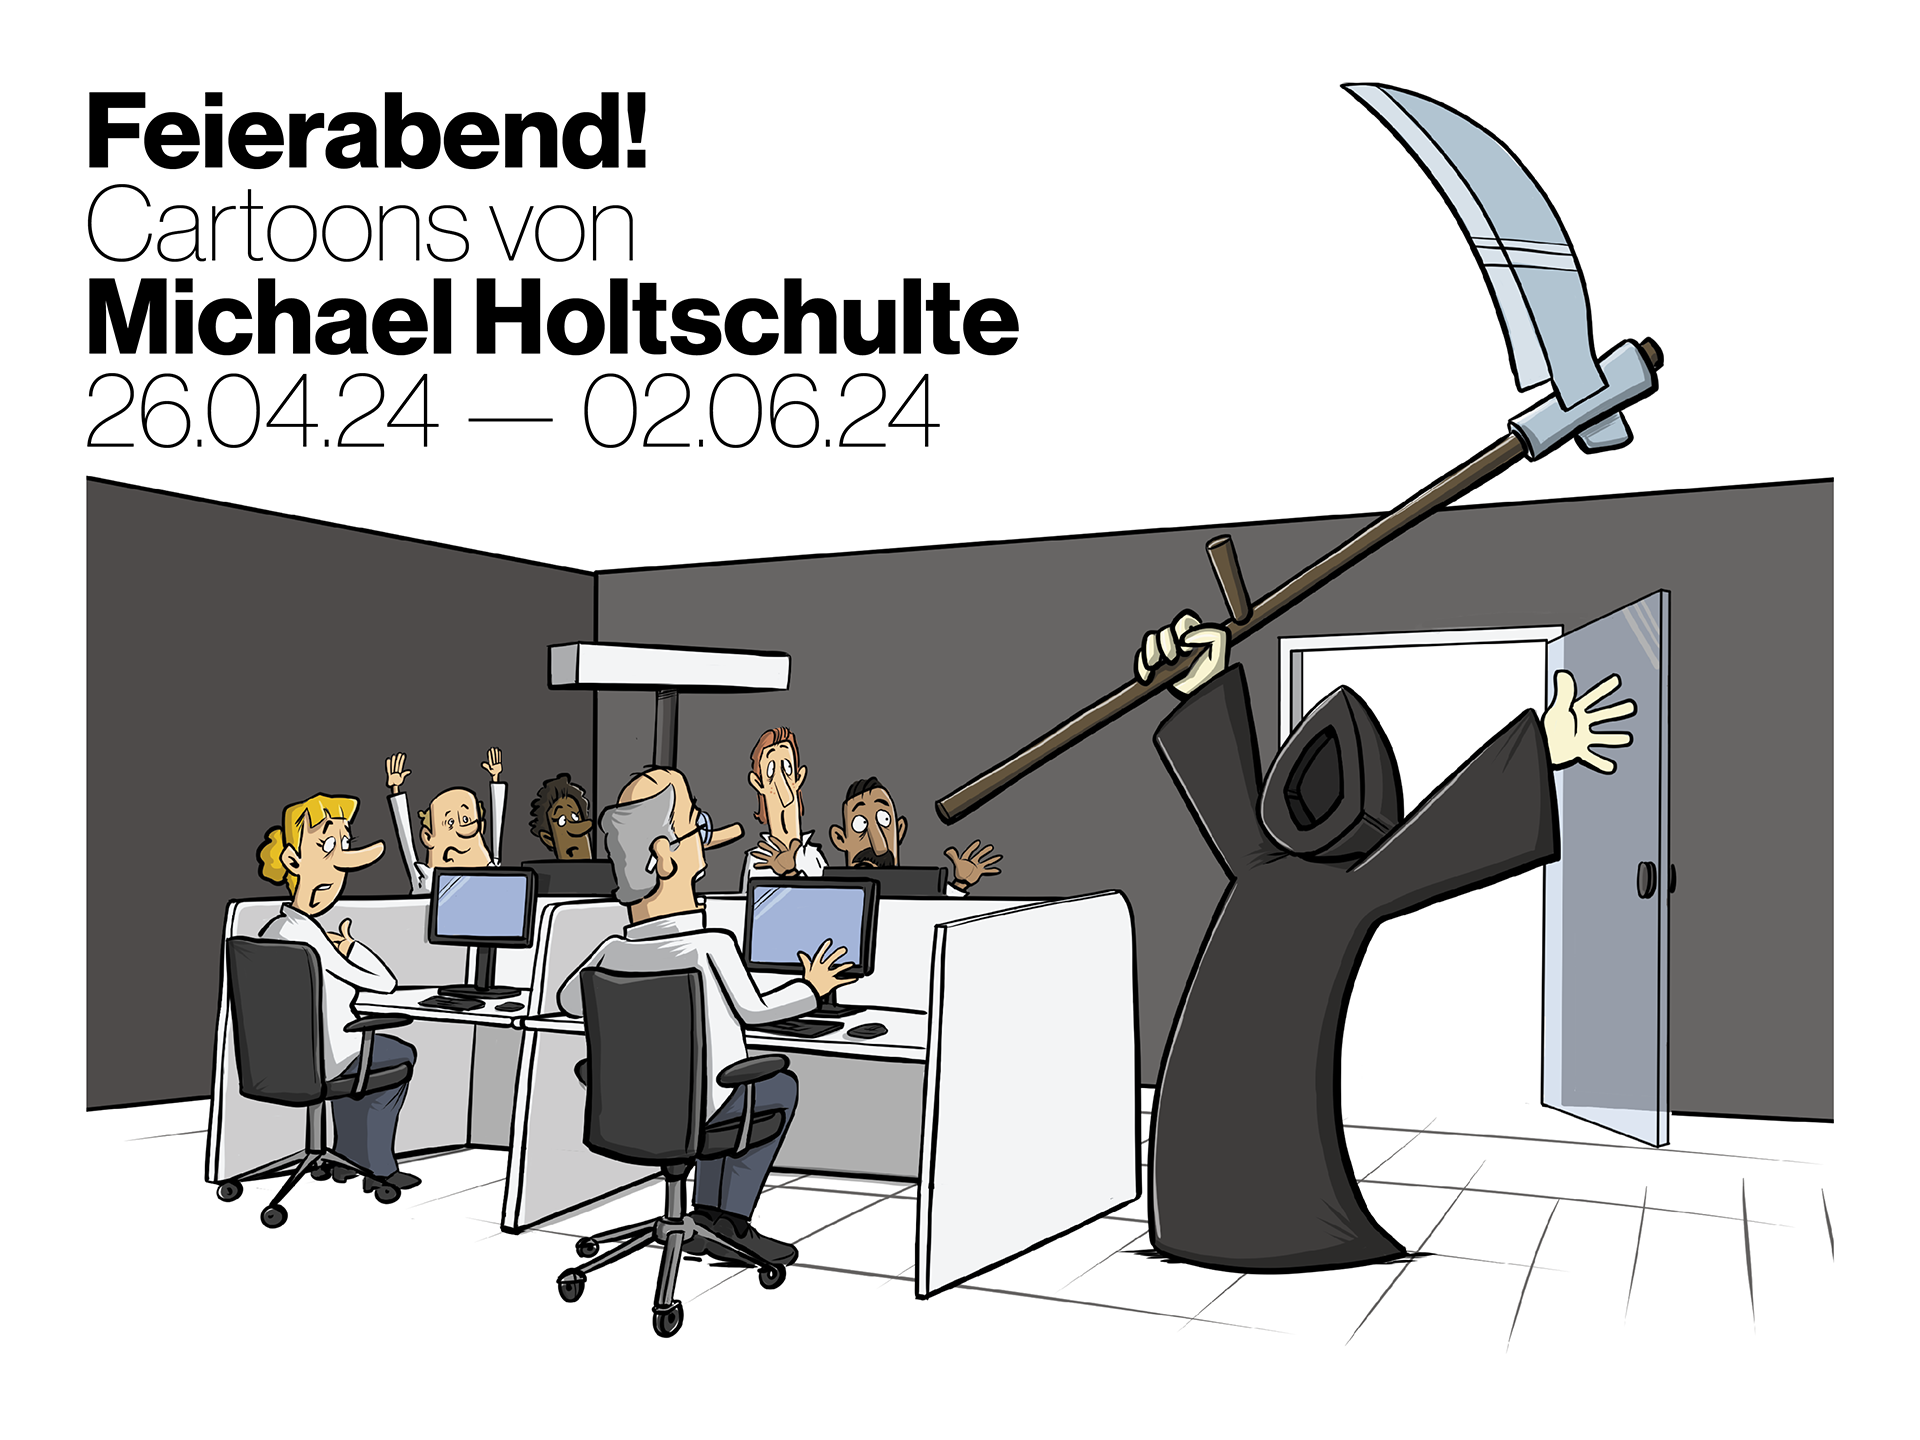 Künstler-Talk zwischen Michael Holtschulte und Oliver Uschmann zu „FEIERABEND!“